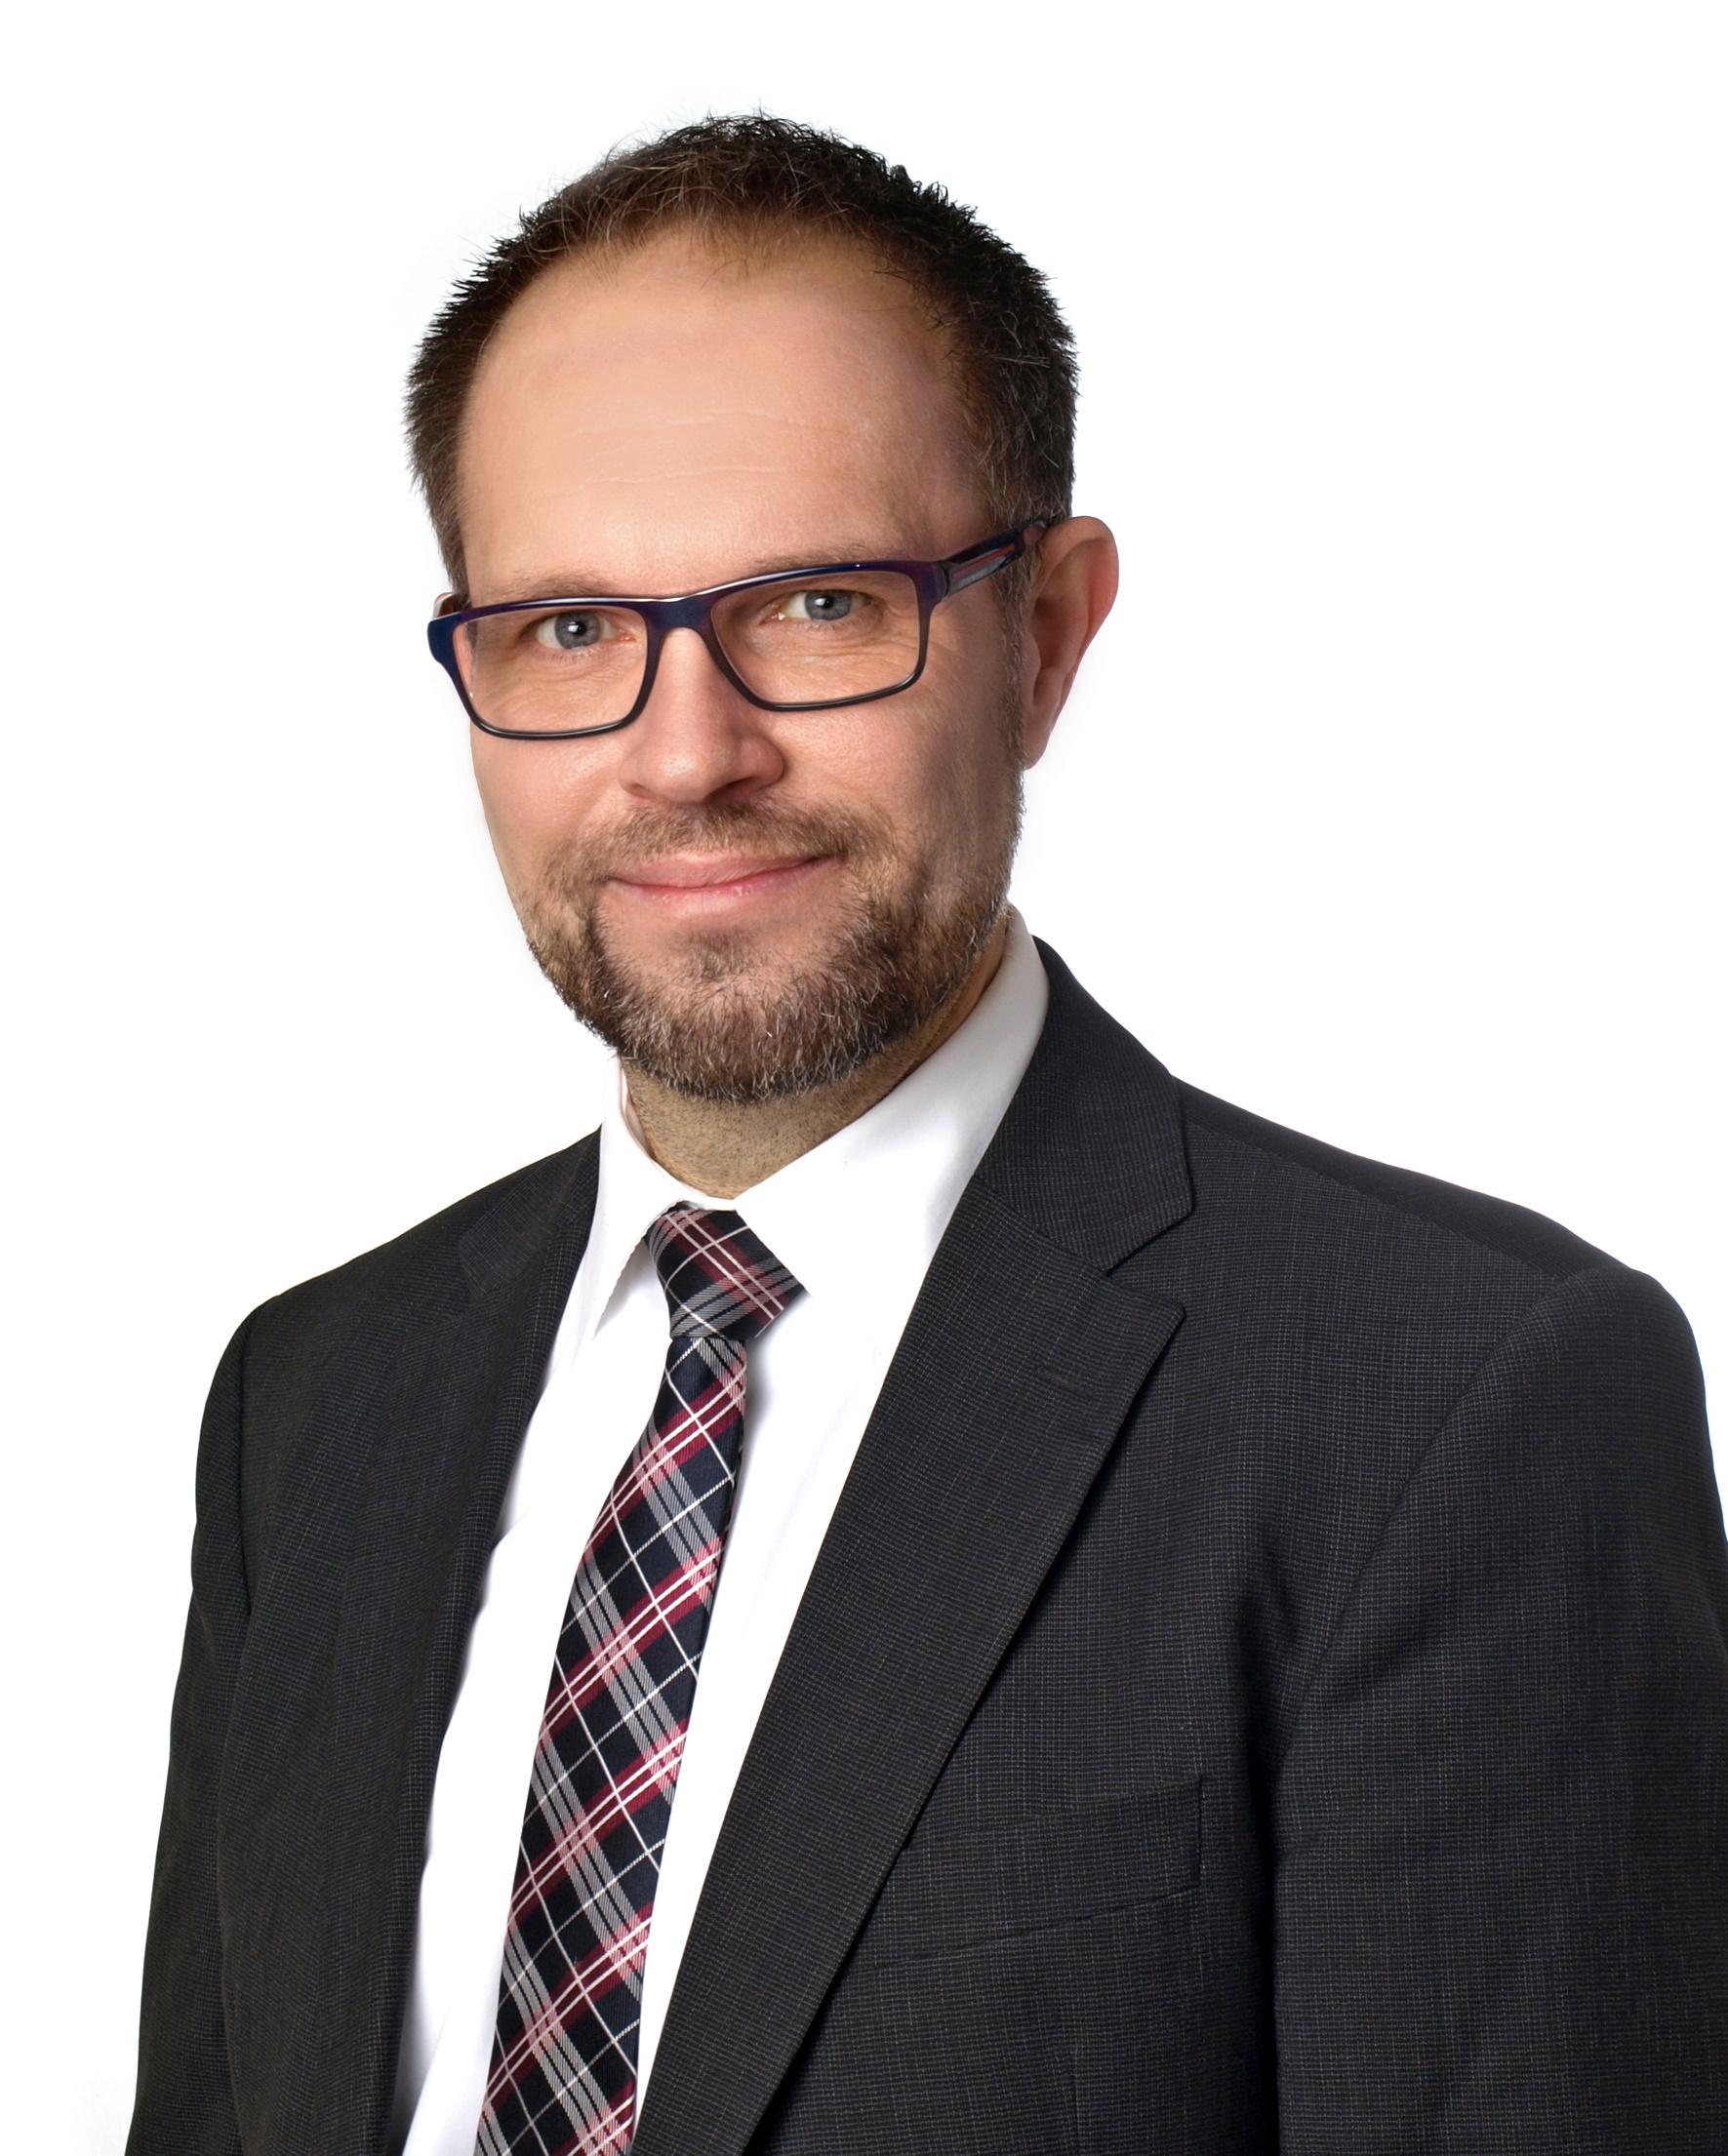 Kundenbild groß 1 Manfred Schmitt, Finanzagenturleiter und Selbstständiger Finanzberater für die Deutsche Bank